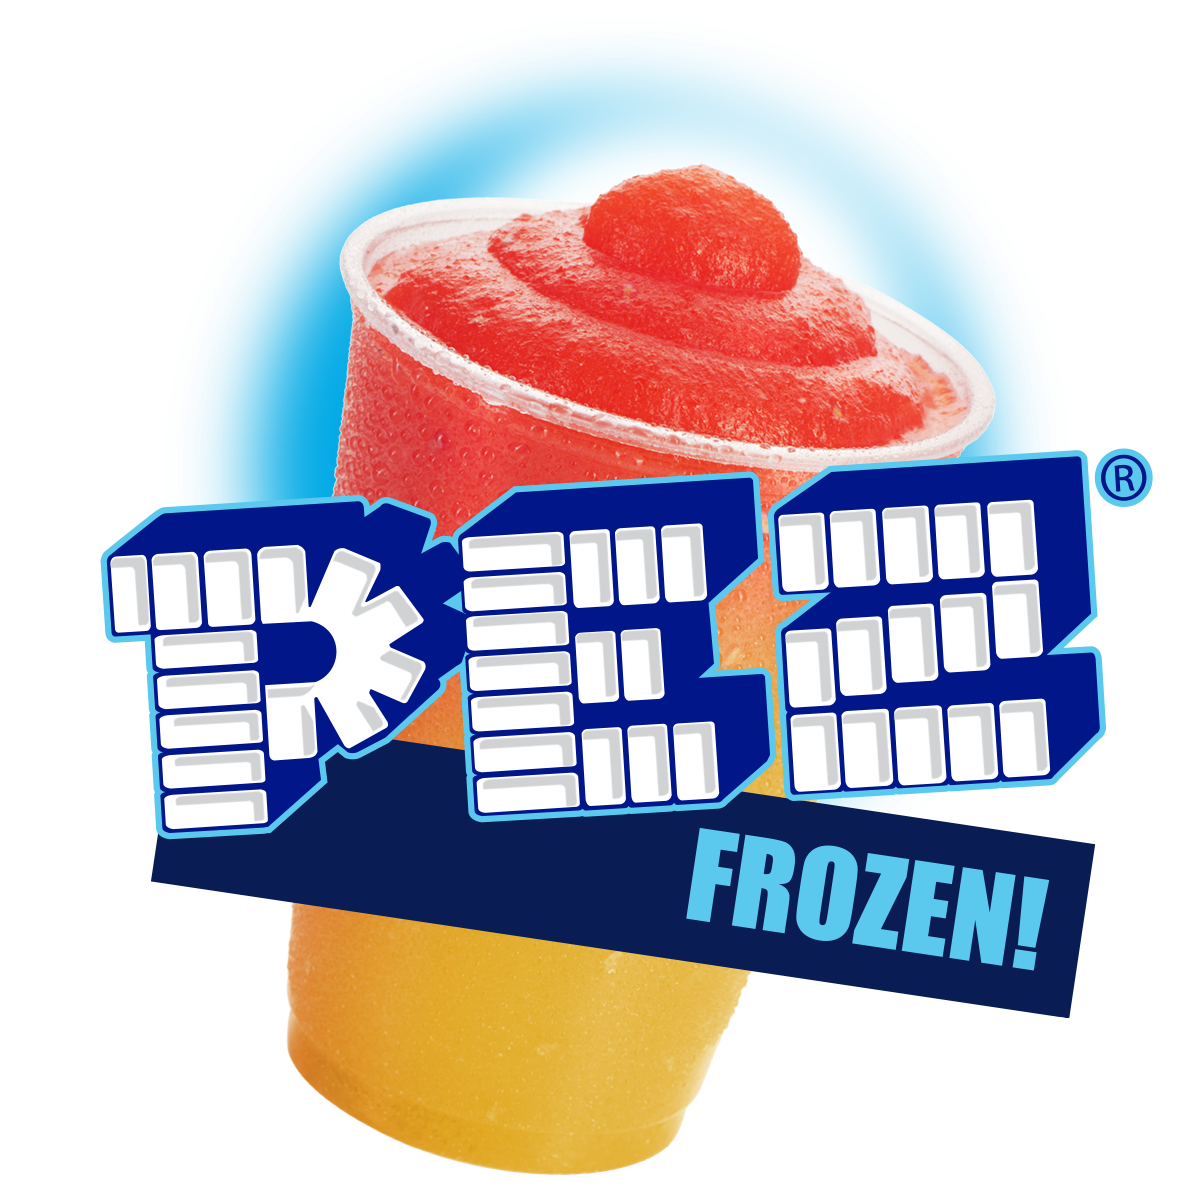 PEZ Frozen Beverages